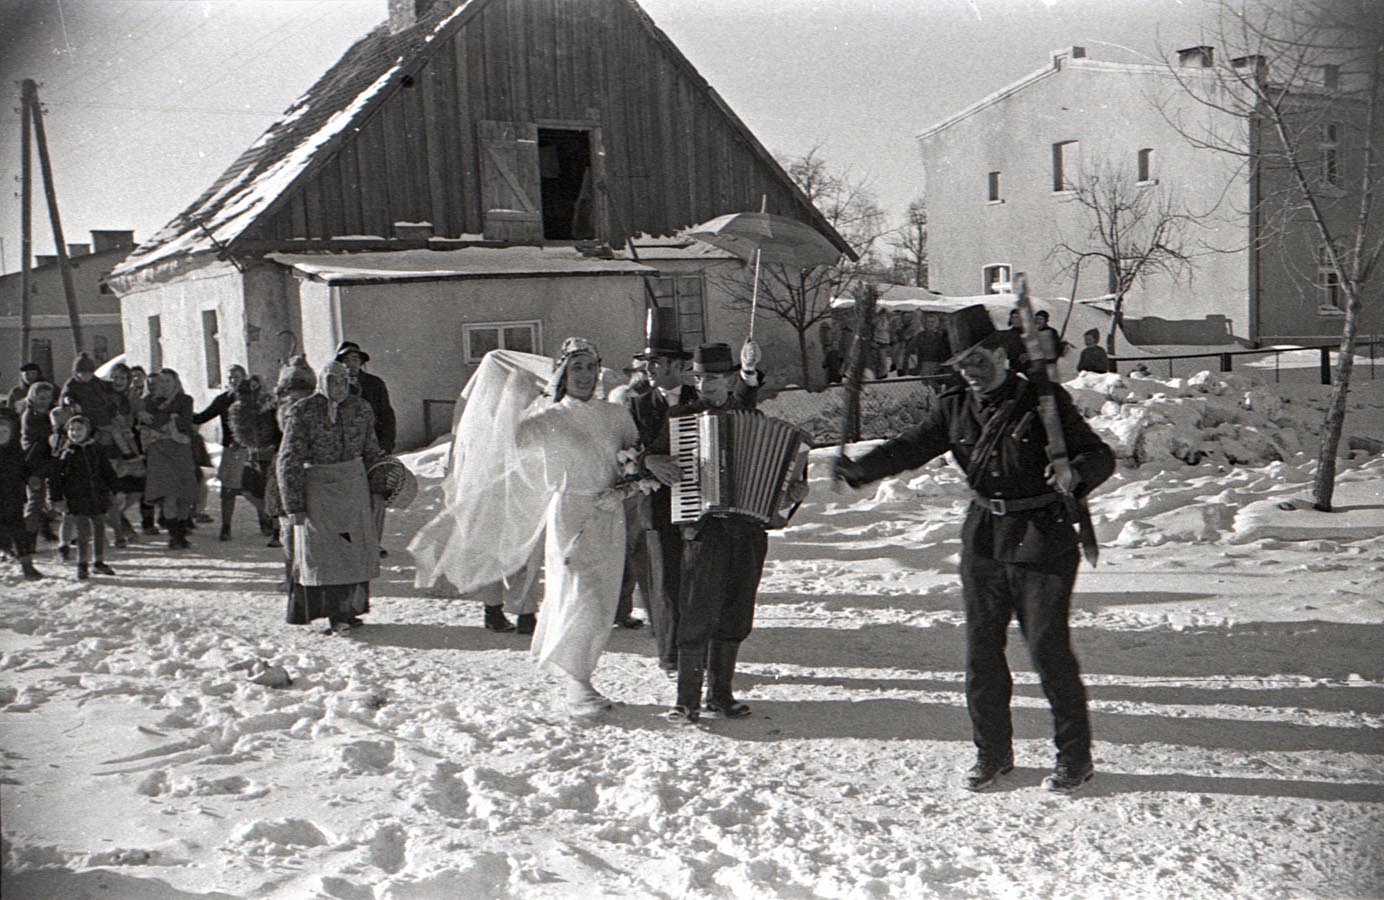 Fotografia czarno-biała przedstawiająca korowód przebierańców idących drogą. Na ich czele widoczny kominiarz i dwie osoby przebrane za parę młodą, mężczyzna gra na akordeonie. Dookoła leży śnieg, w tle widoczne budynki mieszkalne.